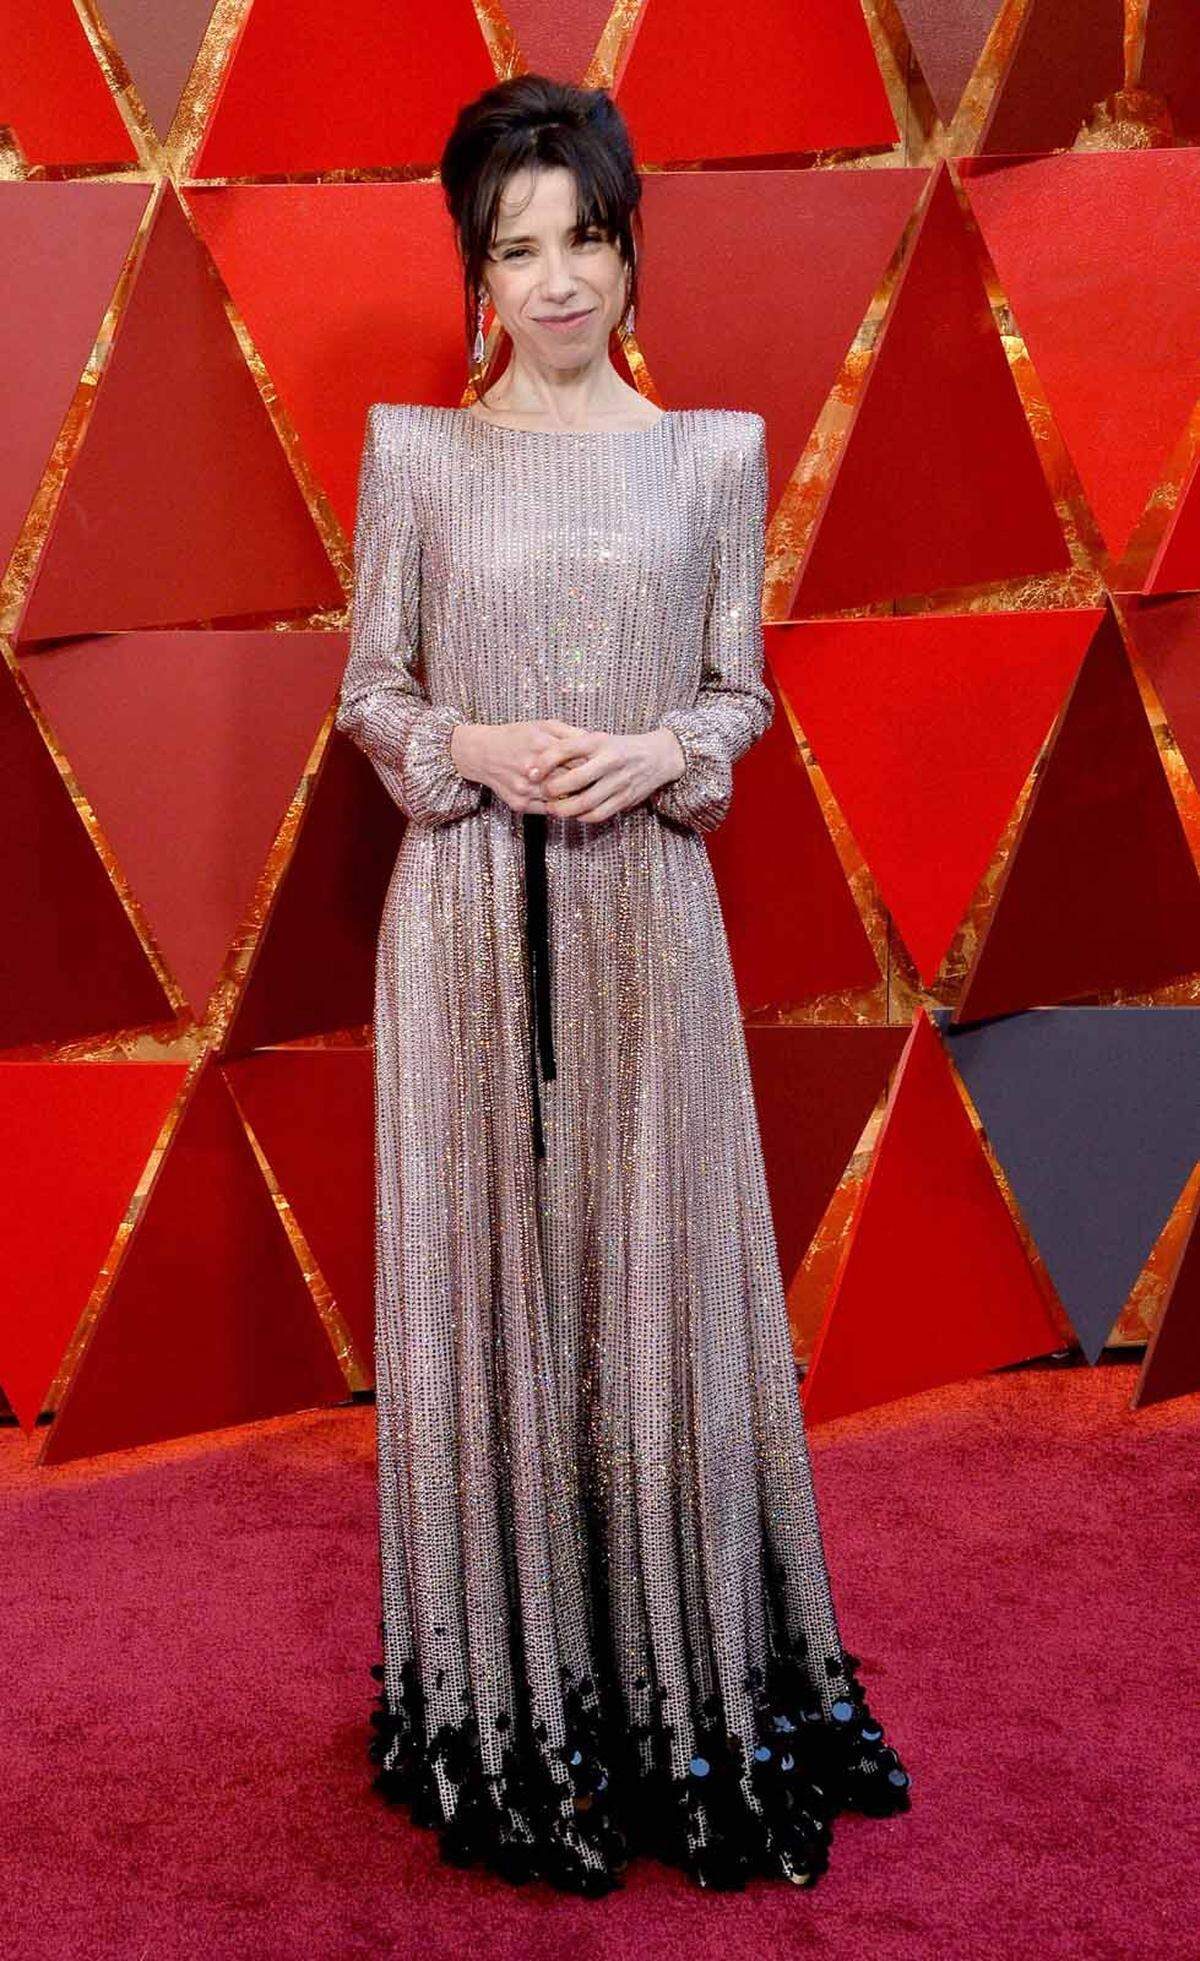 Auch ein Hingucker: Sally Hawkins, nominiert als beste Hauptdarstellerin in "Shape of Water". Sie trug ein Kleid von Armani Privé.